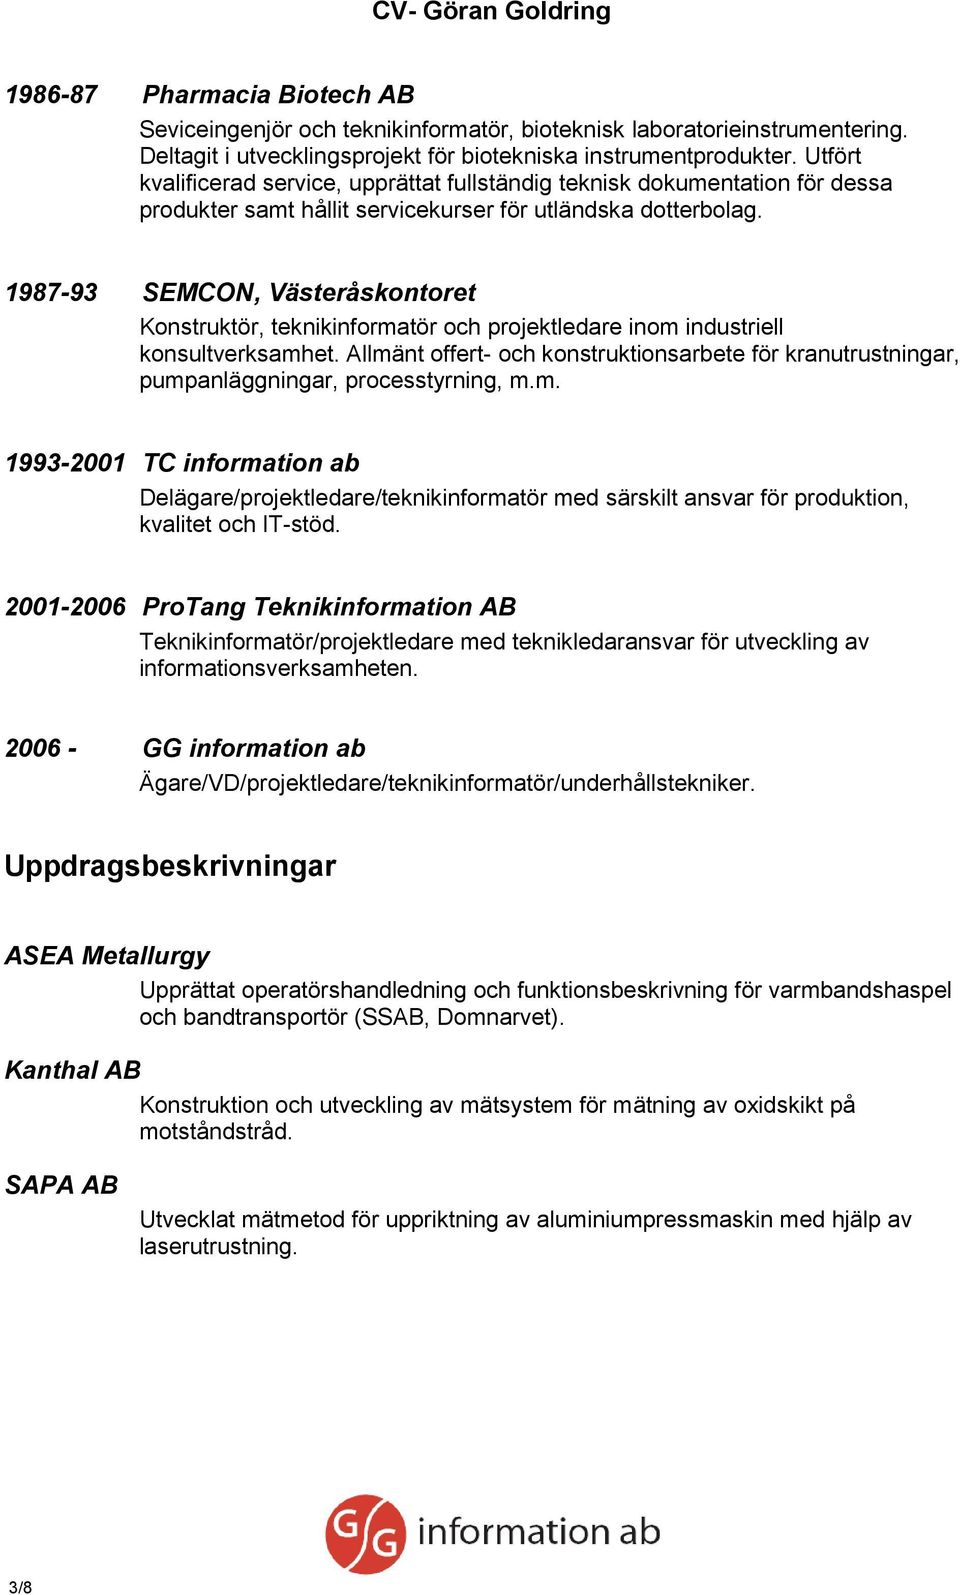 1987-93 SEMCON, Västeråskontoret Konstruktör, teknikinformatör och projektledare inom industriell konsultverksamhet.